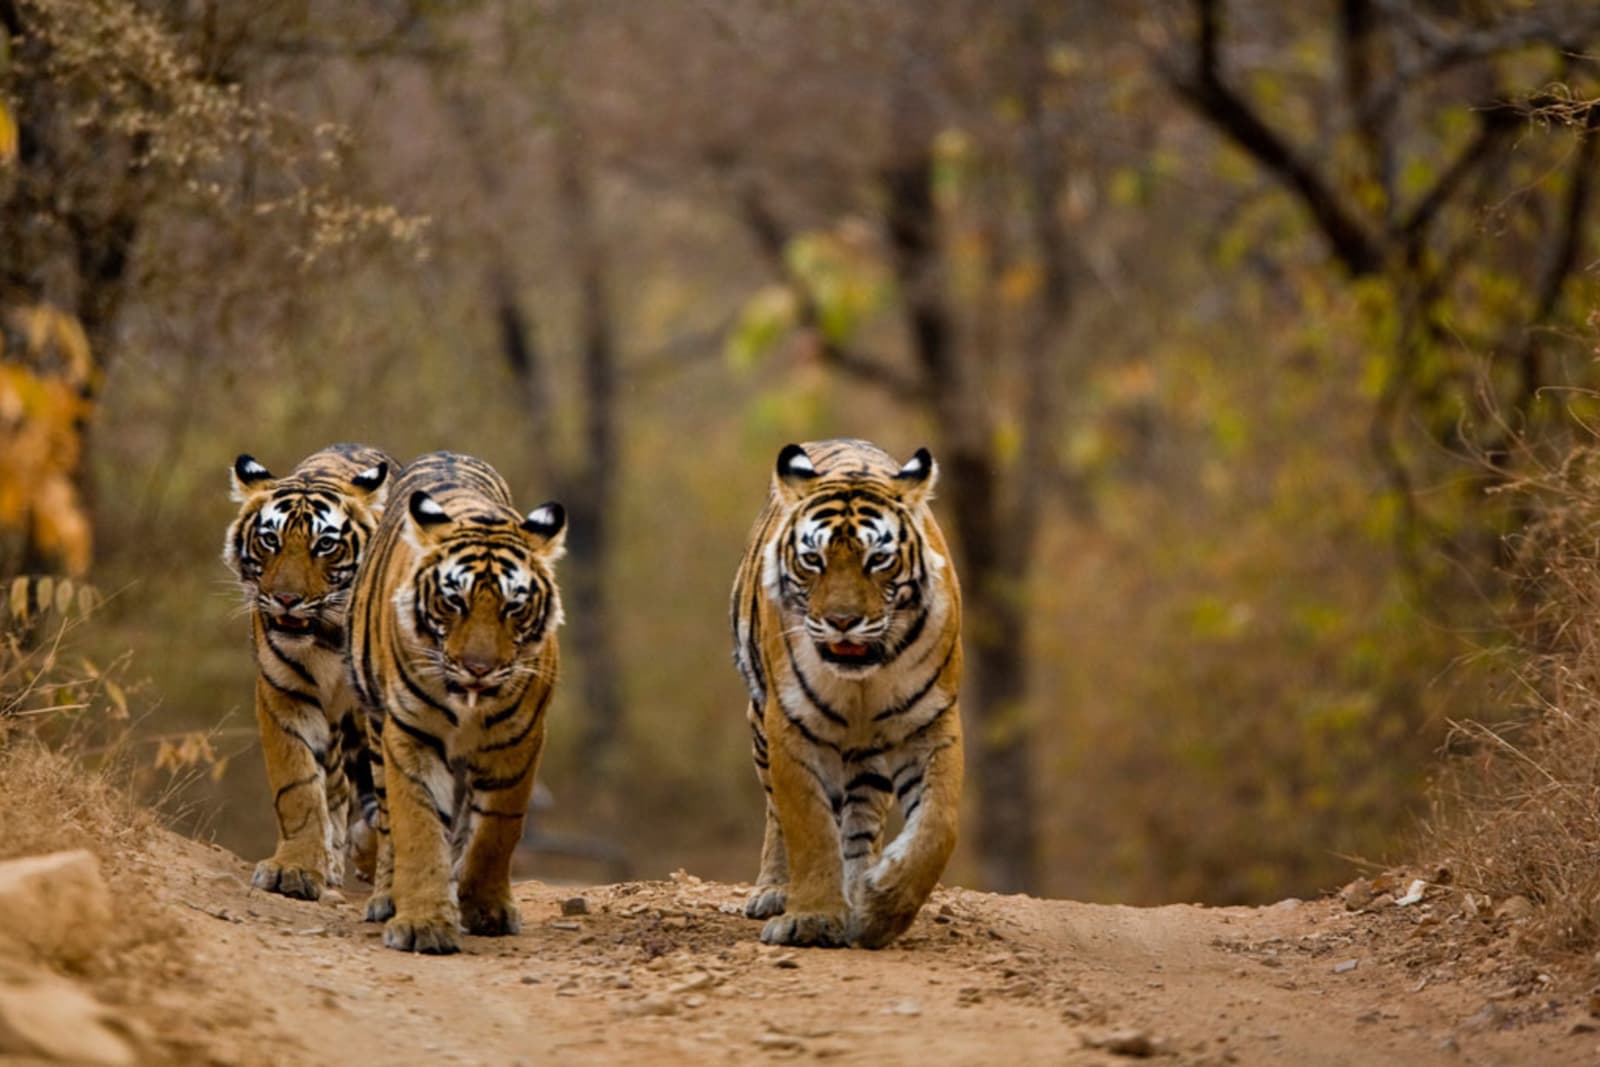 Tigers-in-Rajasthan